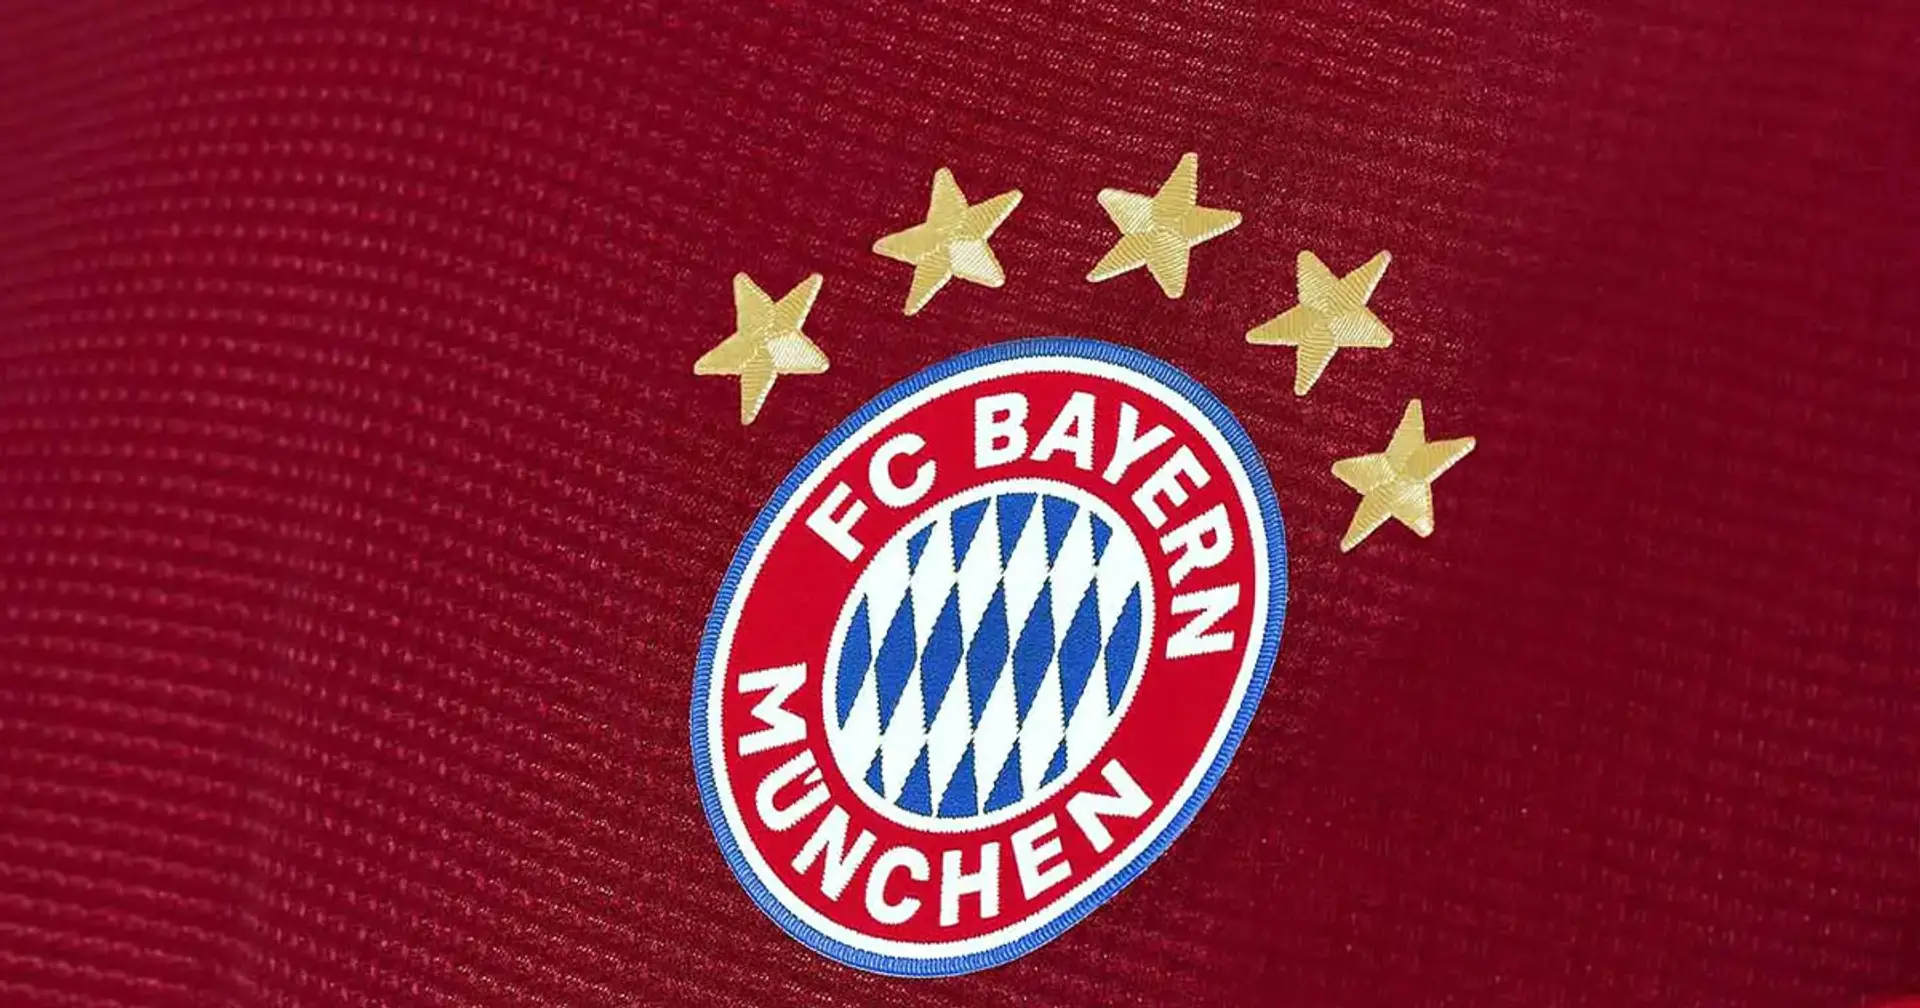 Perché il Bayern ha 5 stelle con 33 titoli? Ecco come funziona all'estero